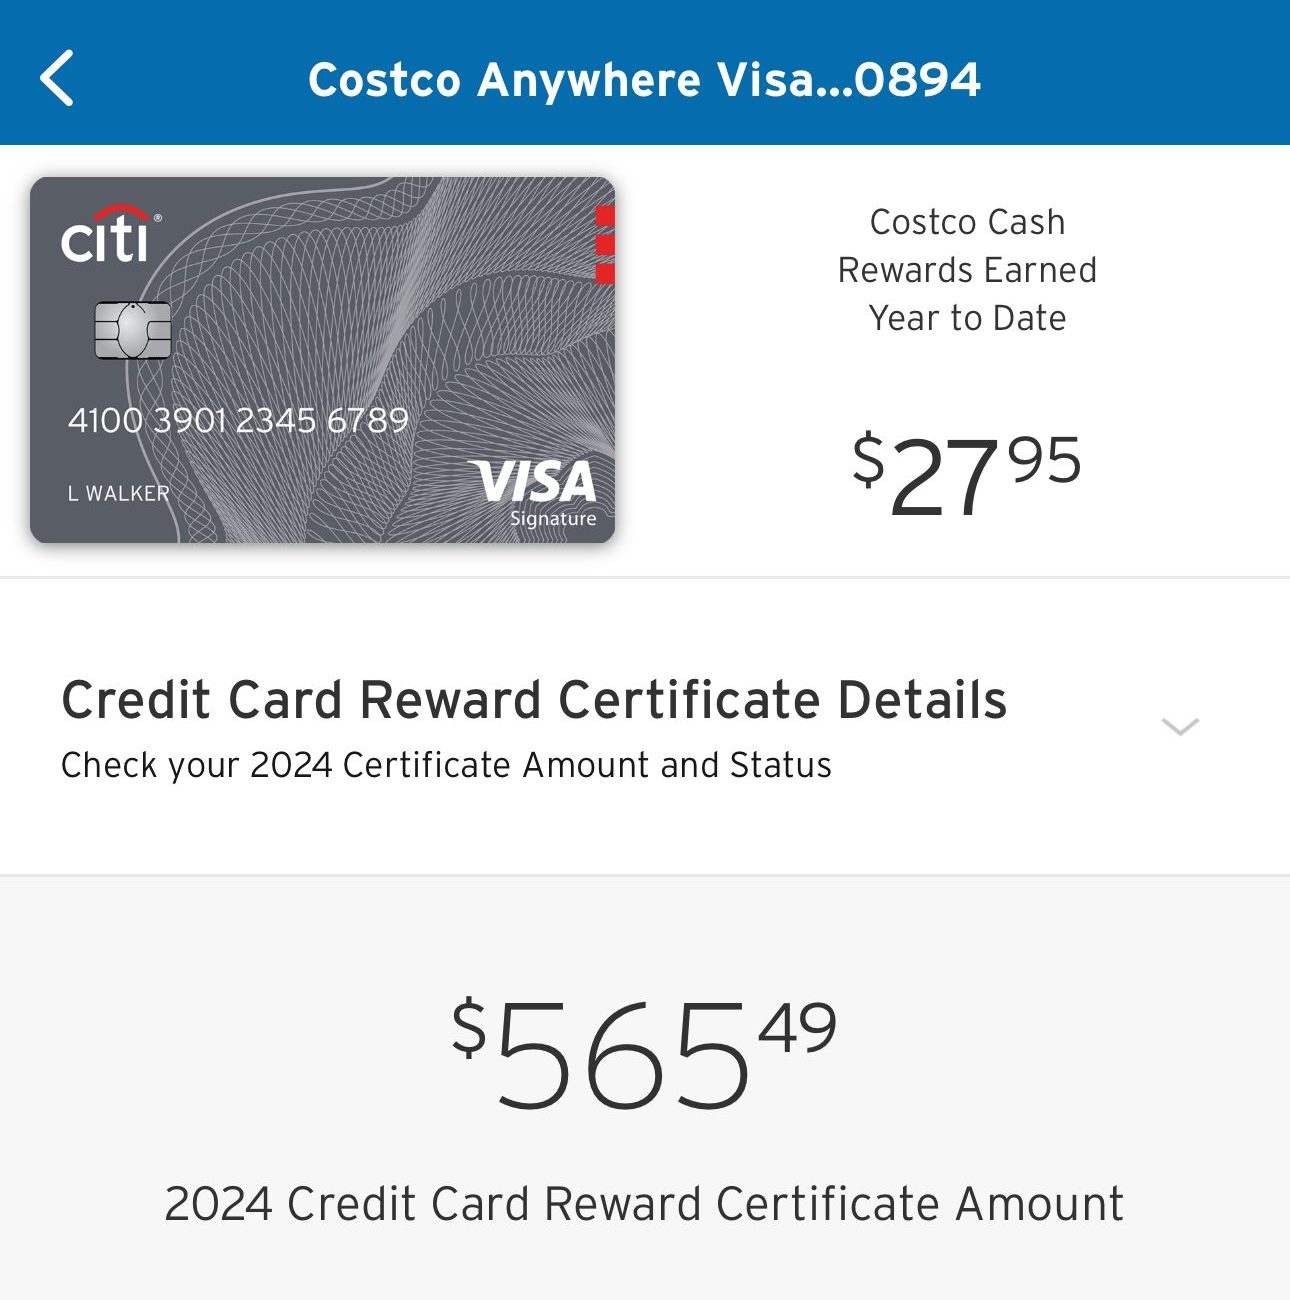 Citi Costco credit card rewards certificate details